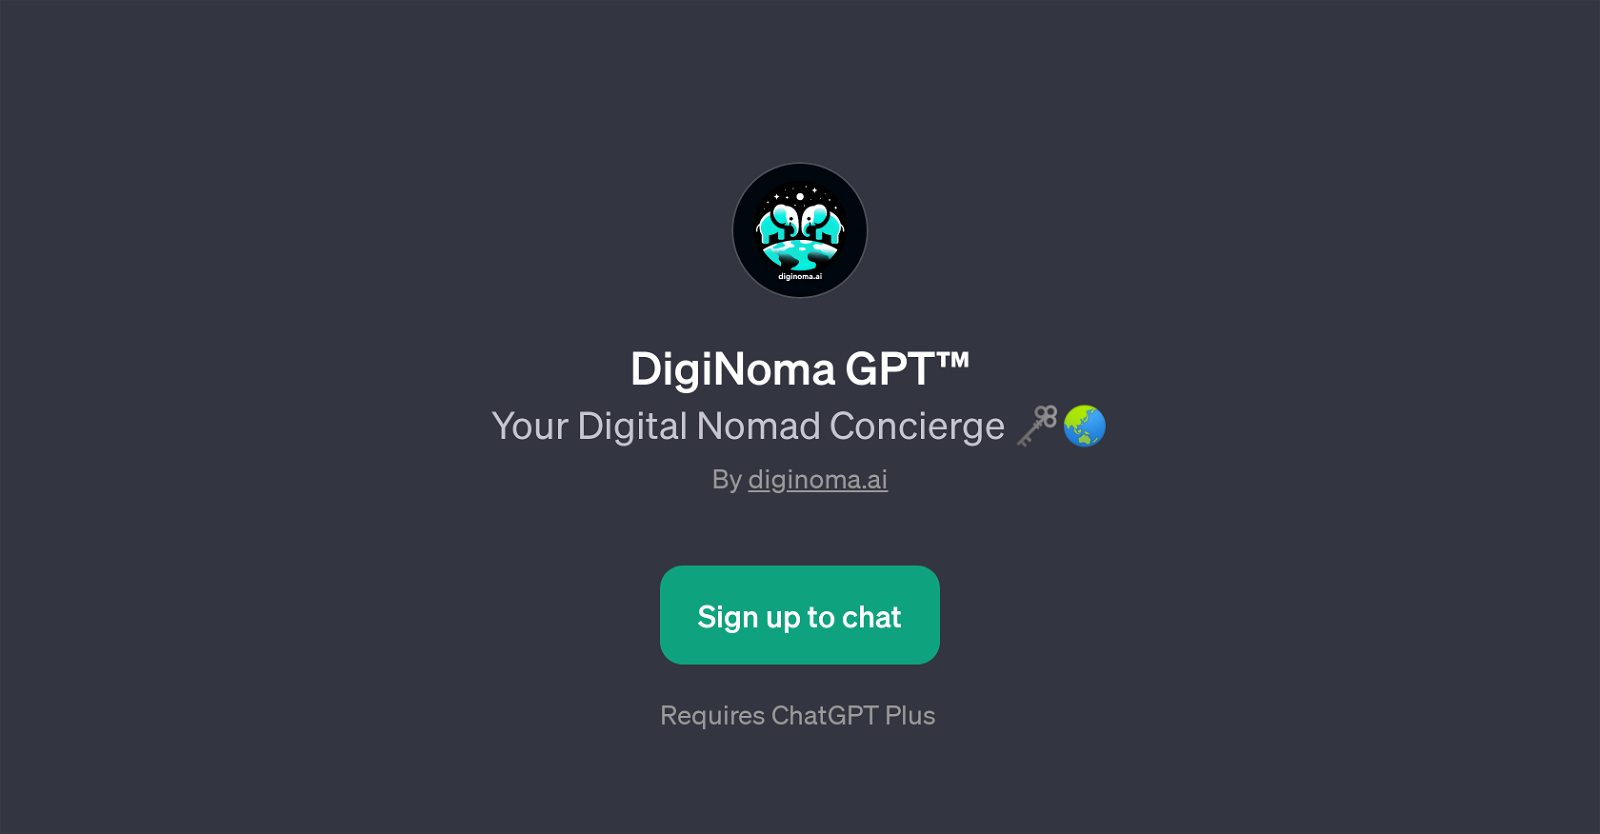 DigiNoma GPT website